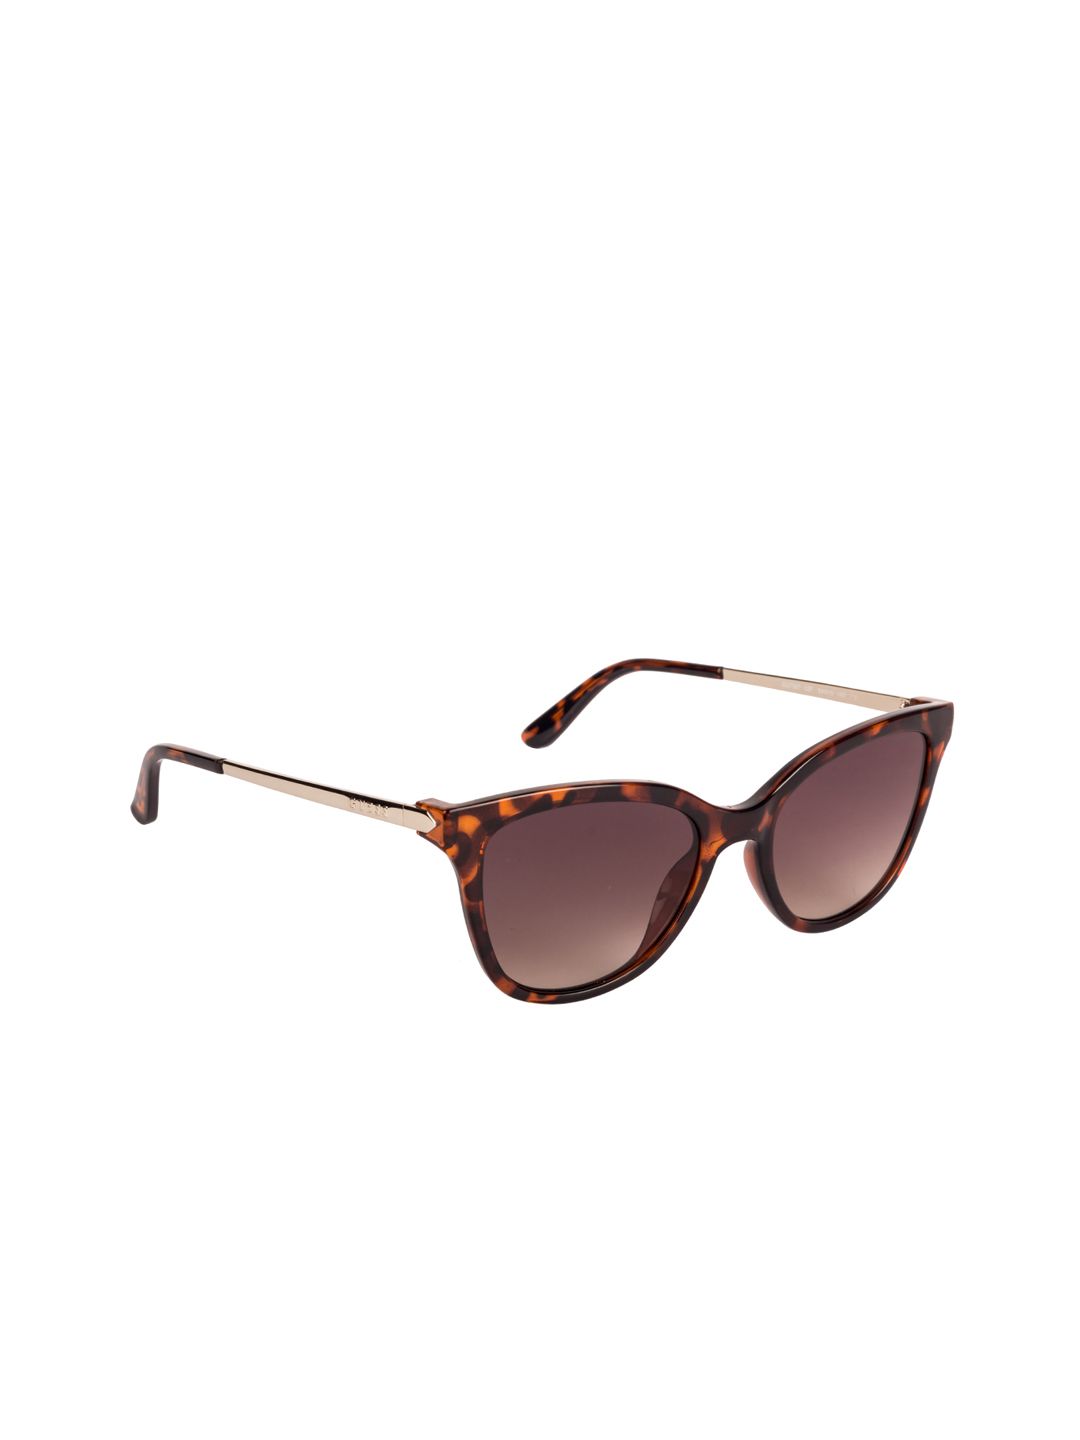 GUESS Women Brown Cateye Sunglasses GU7567 54 52F Price in India